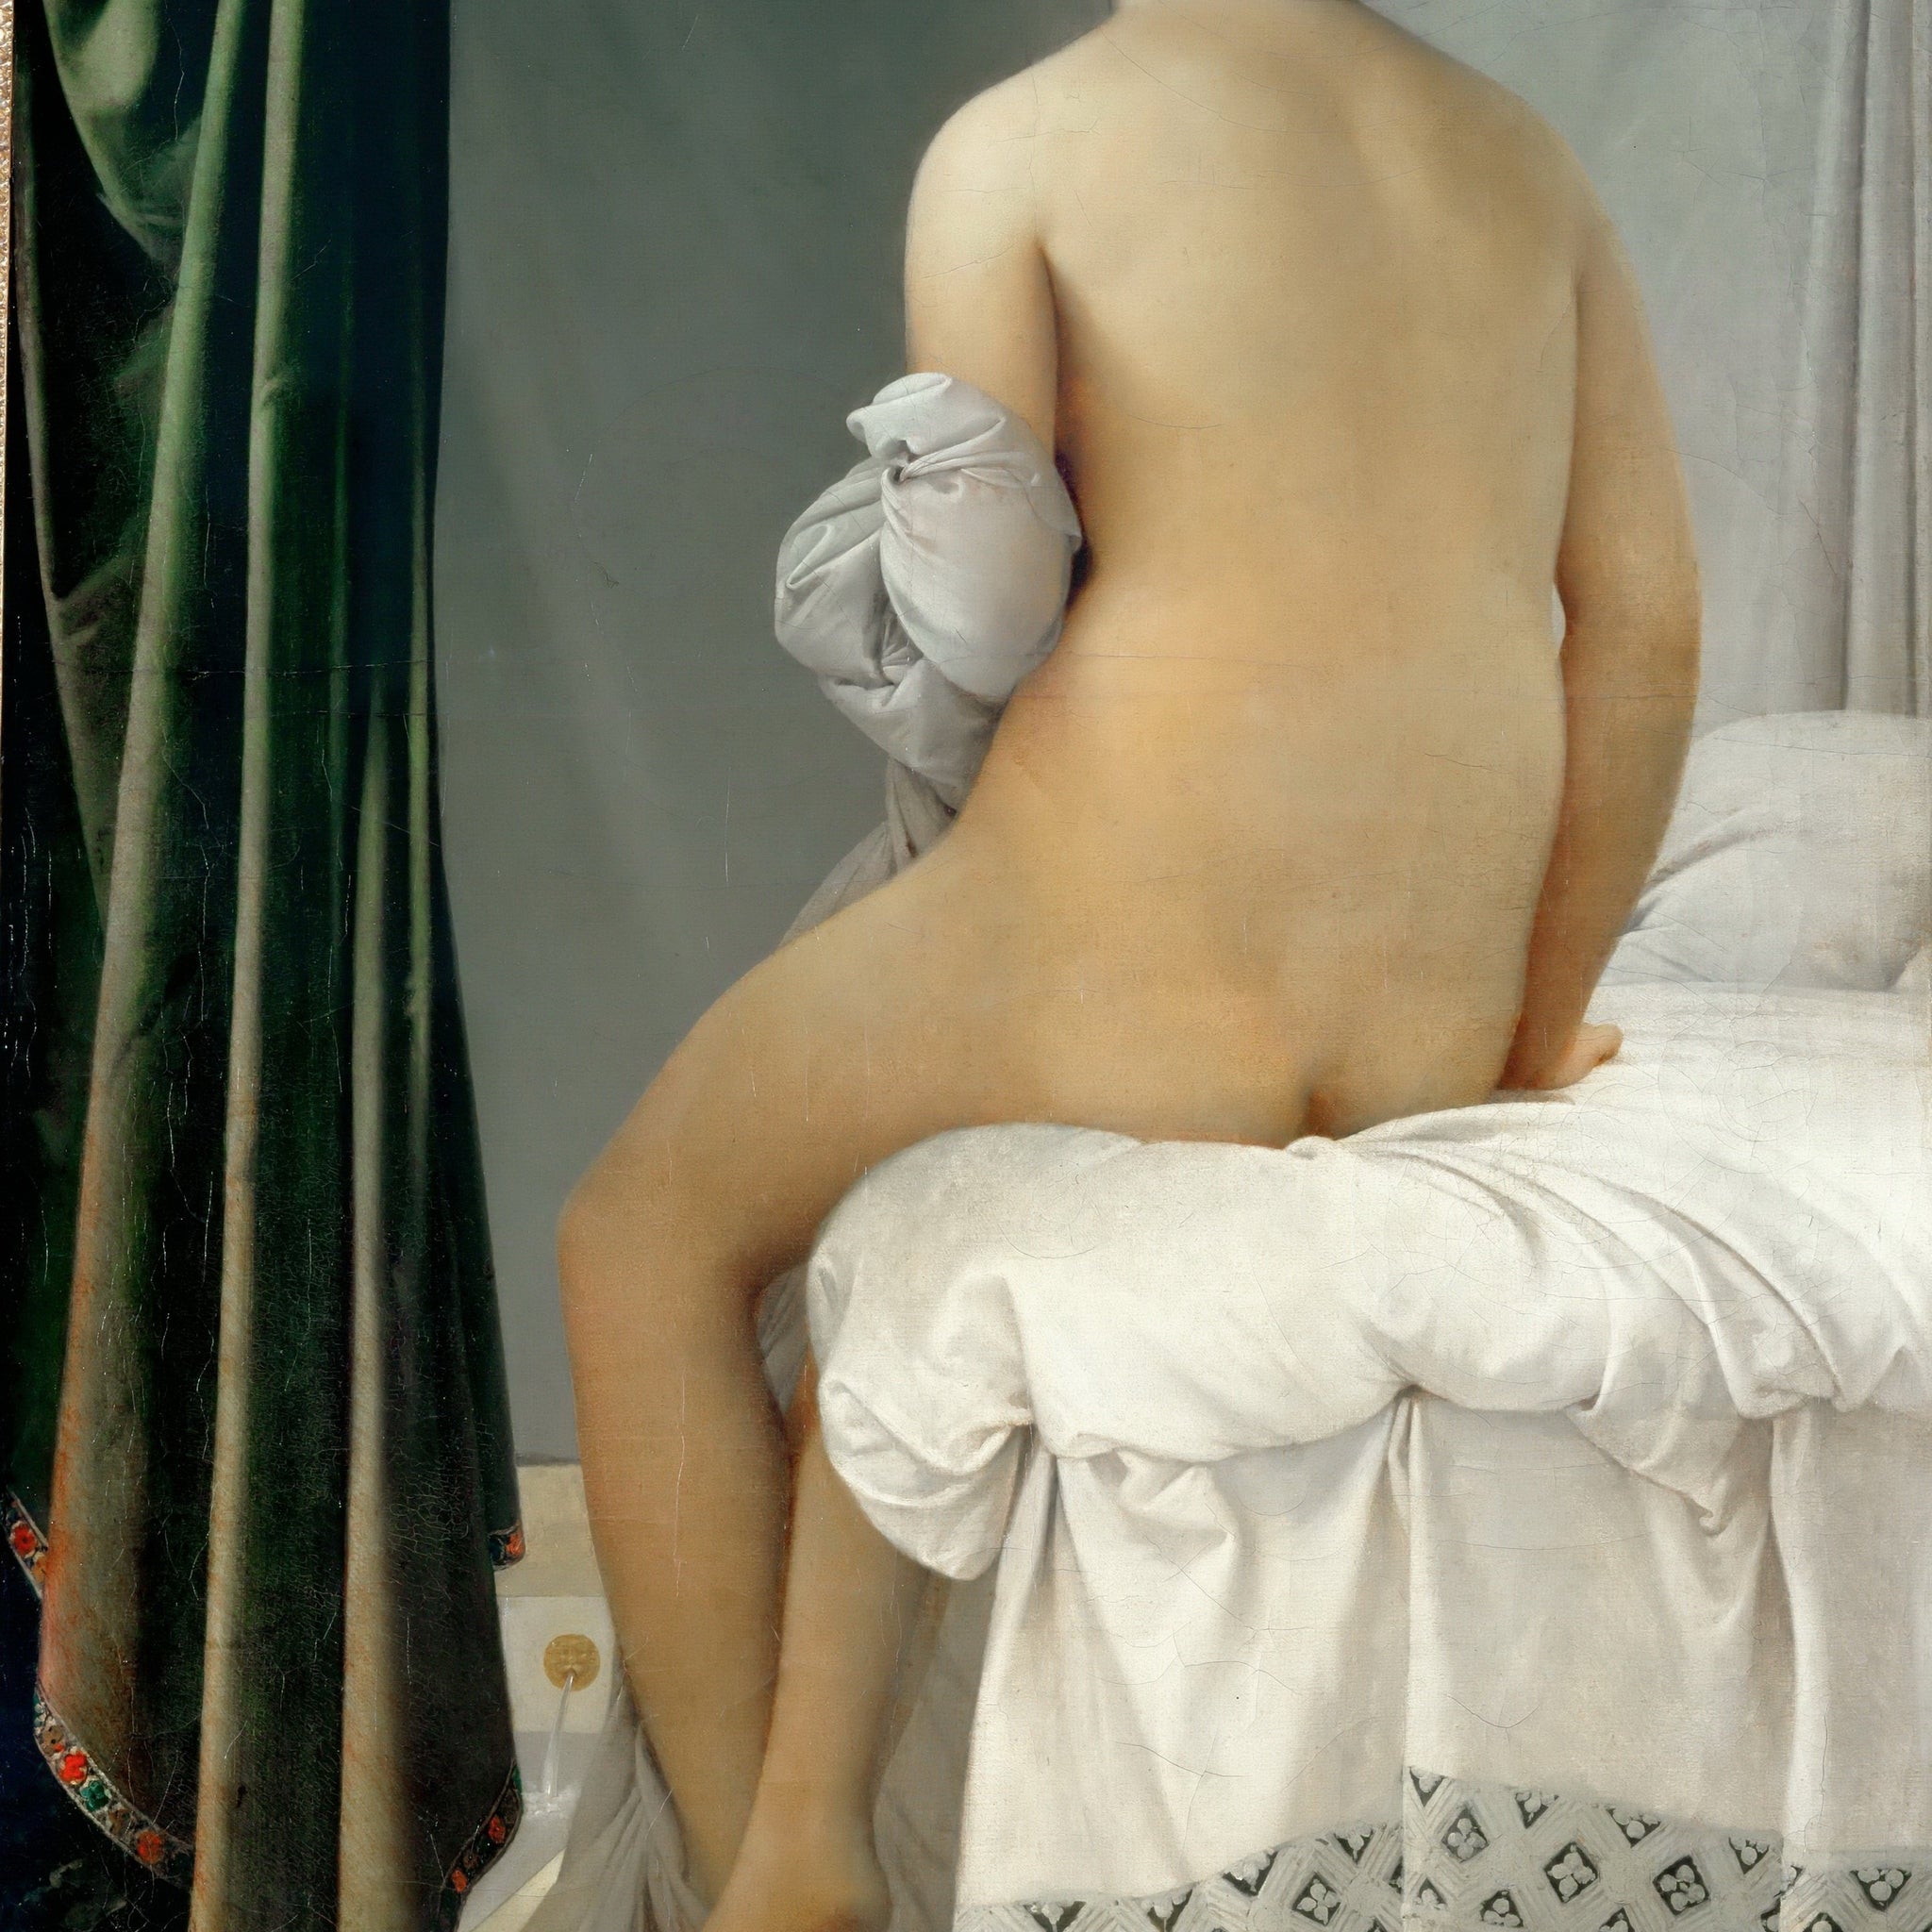 Le baigneur - Jean-Auguste-Dominique Ingres